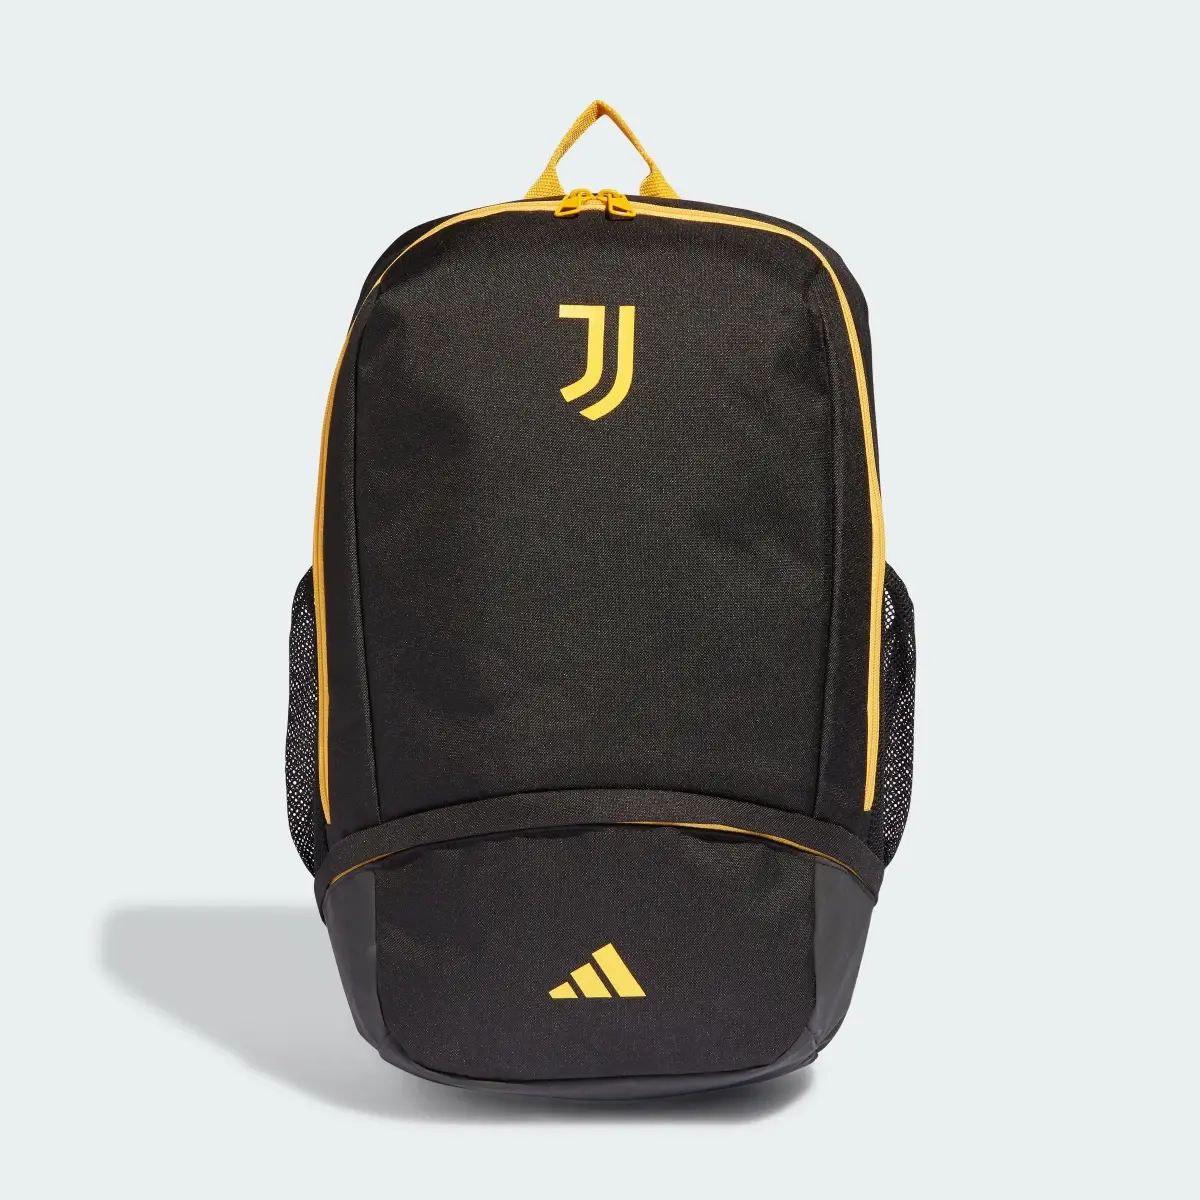 Adidas Juventus Backpack. 2